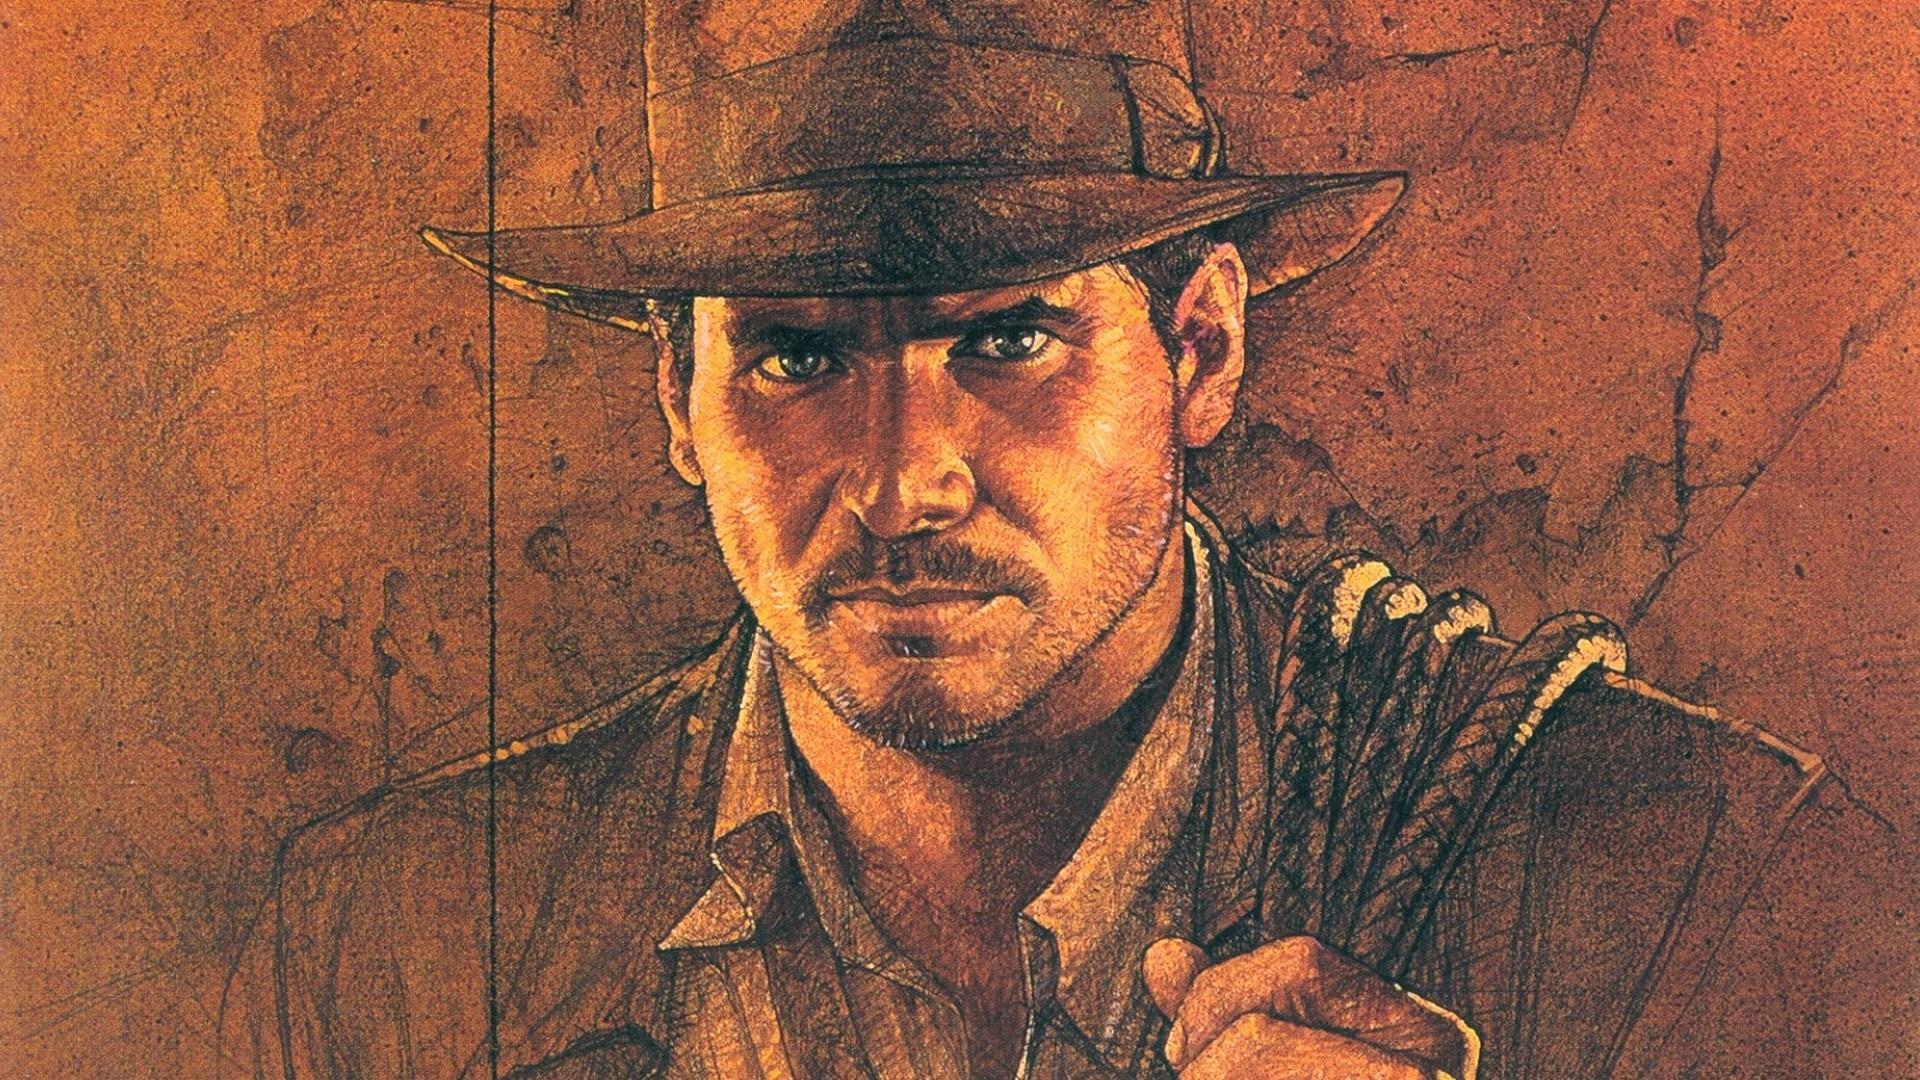 Indiana Jones 1920x1080 wallpapers